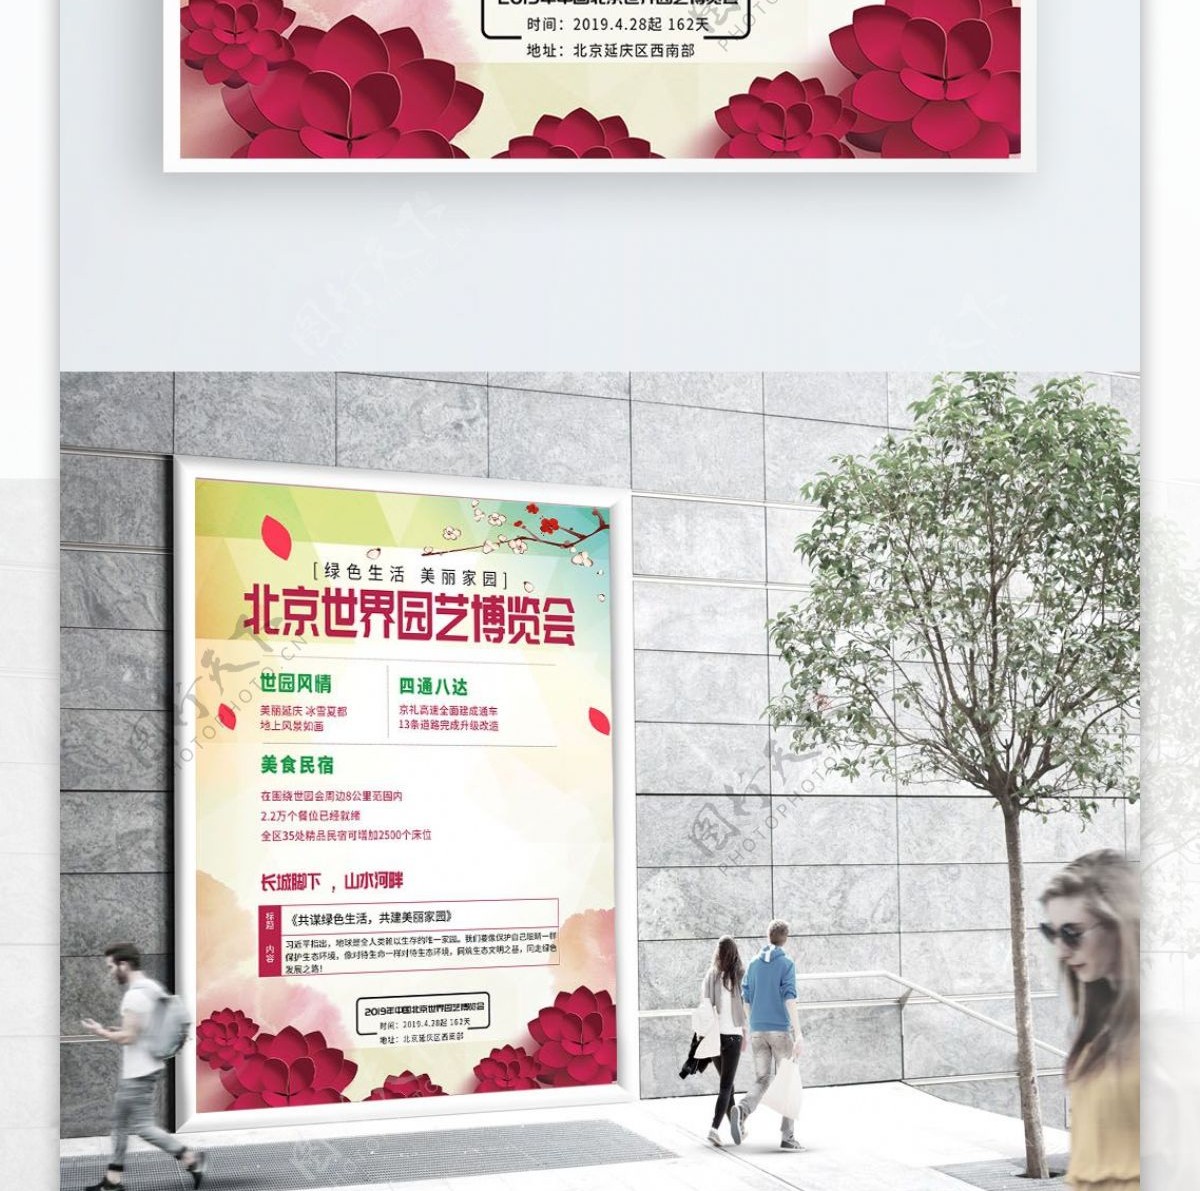 北京世界园艺博览会美丽家园繁花博览会